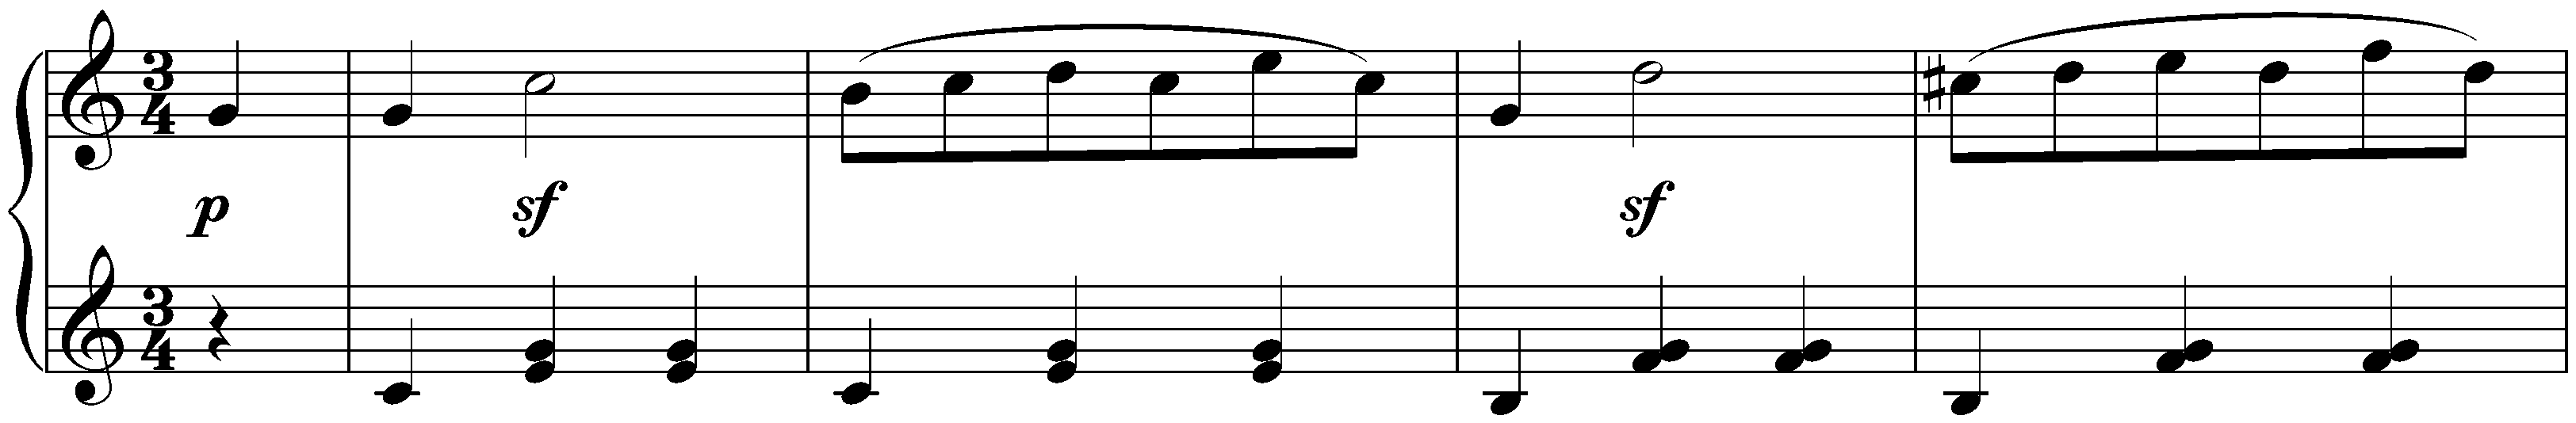 Twelve deutsche Tänze, WoO 8; 1. C major